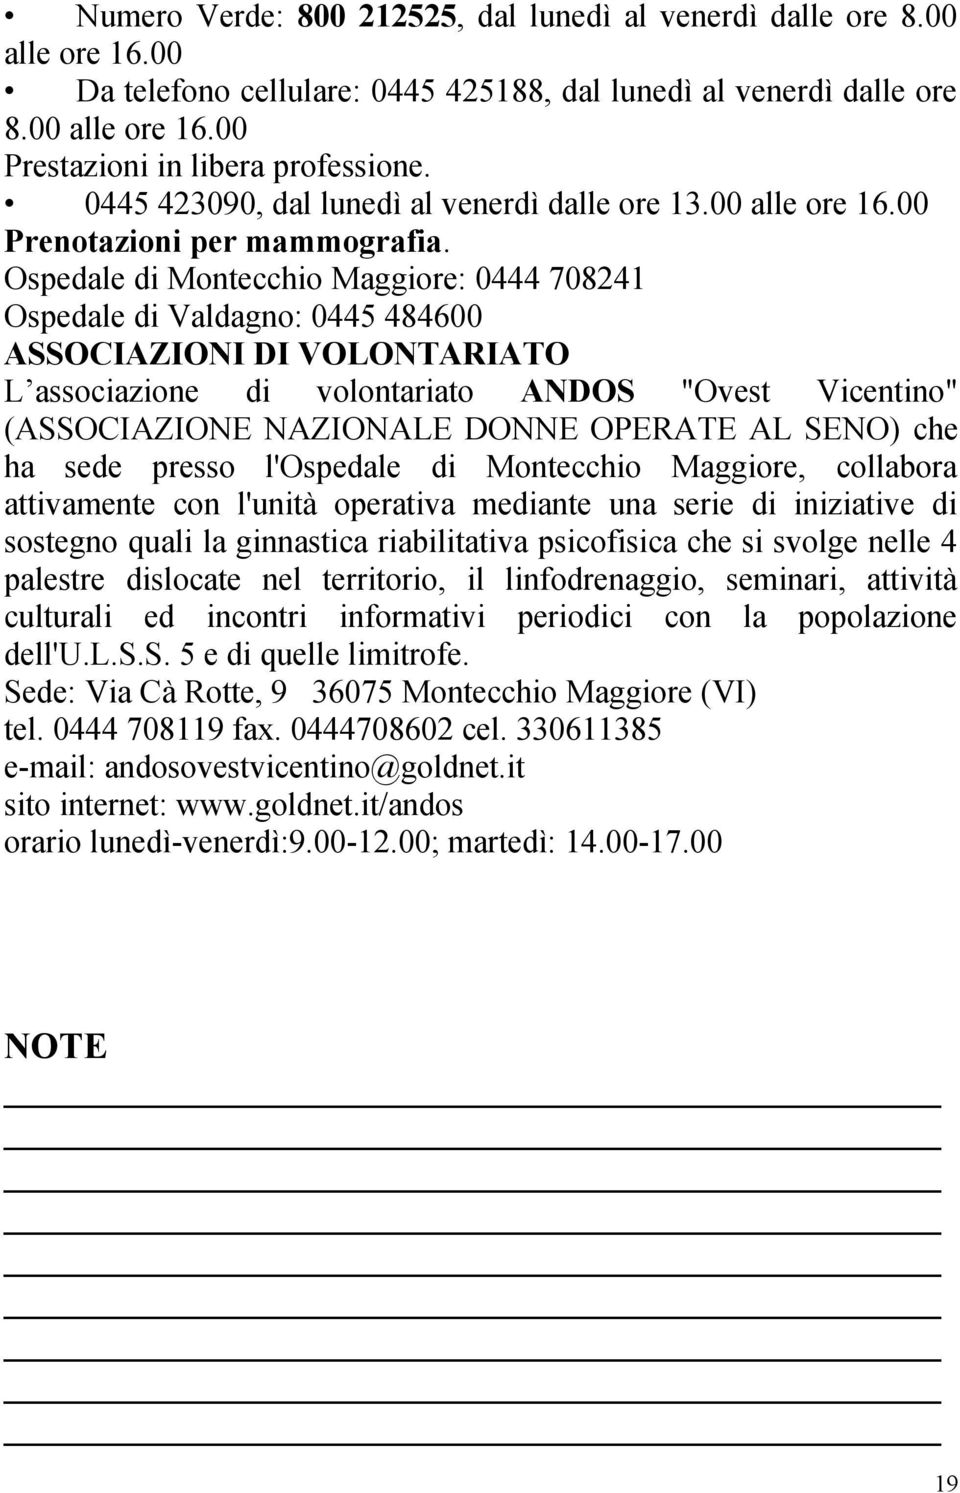 Ospedale di Montecchio Maggiore: 0444 708241 Ospedale di Valdagno: 0445 484600 ASSOCIAZIONI DI VOLONTARIATO L associazione di volontariato ANDOS "Ovest Vicentino" (ASSOCIAZIONE NAZIONALE DONNE